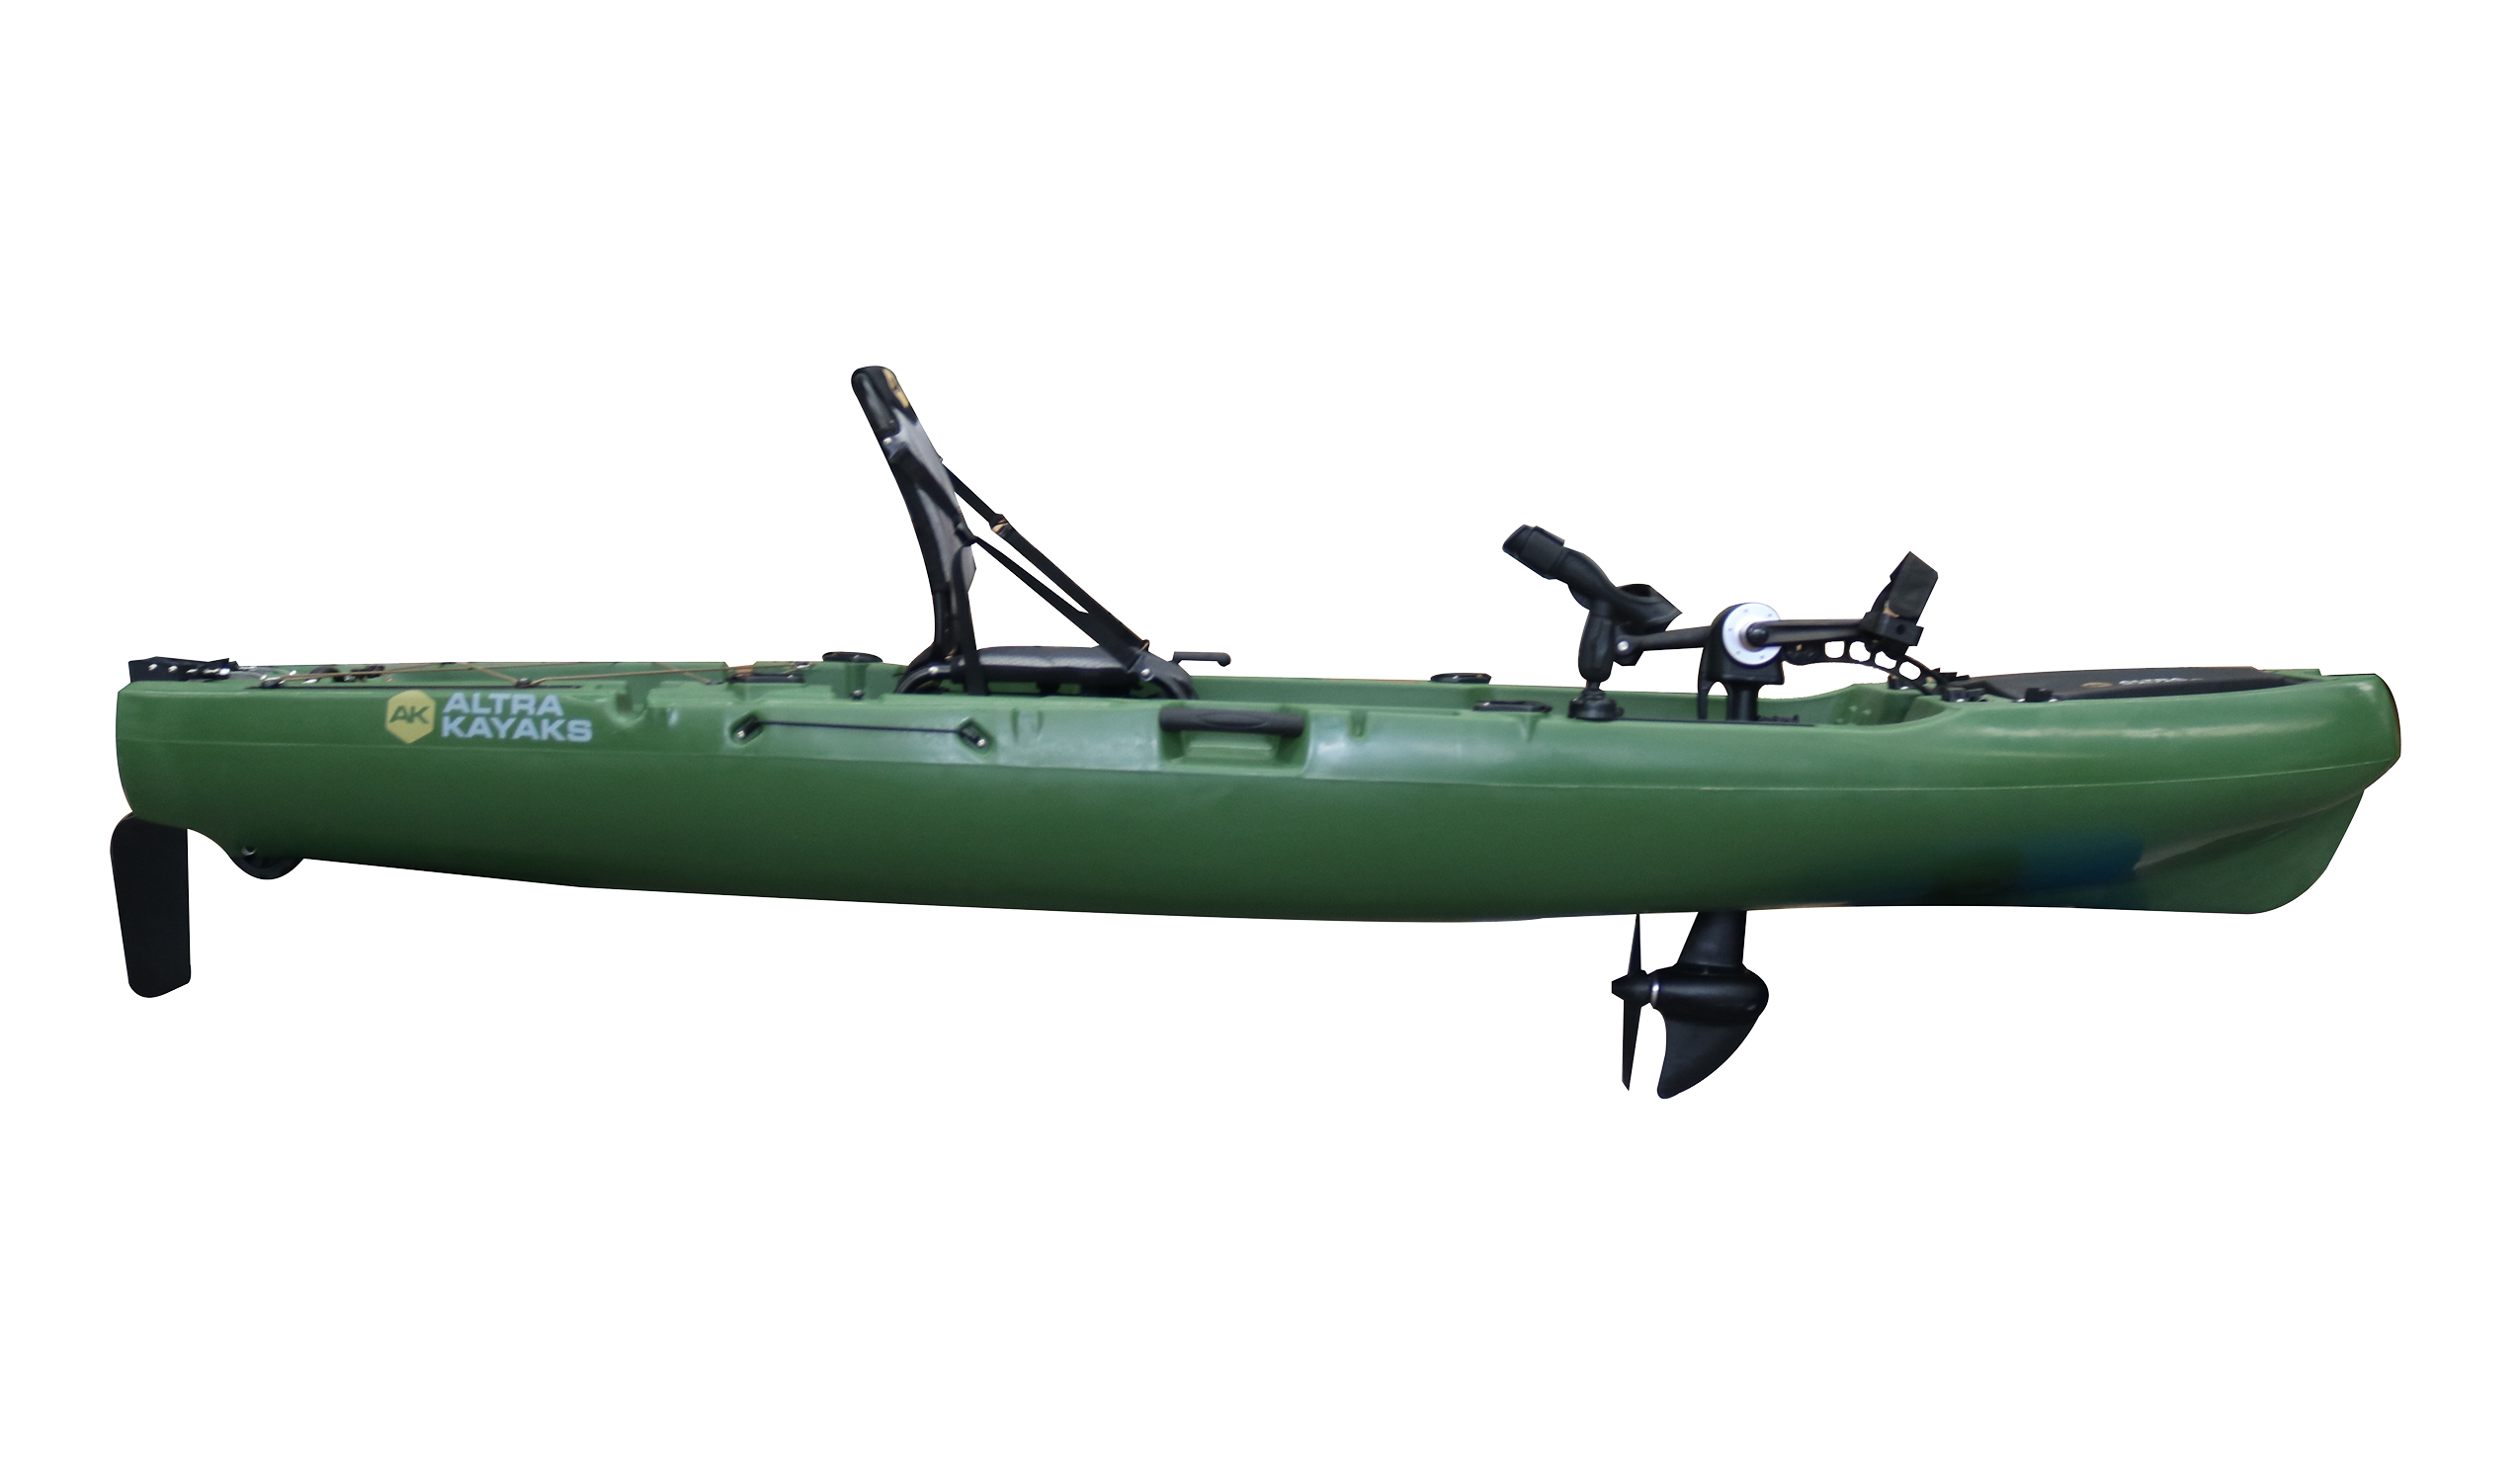 Promozione PD 320-green: kayak + sedile girevole fino al 10 marzo